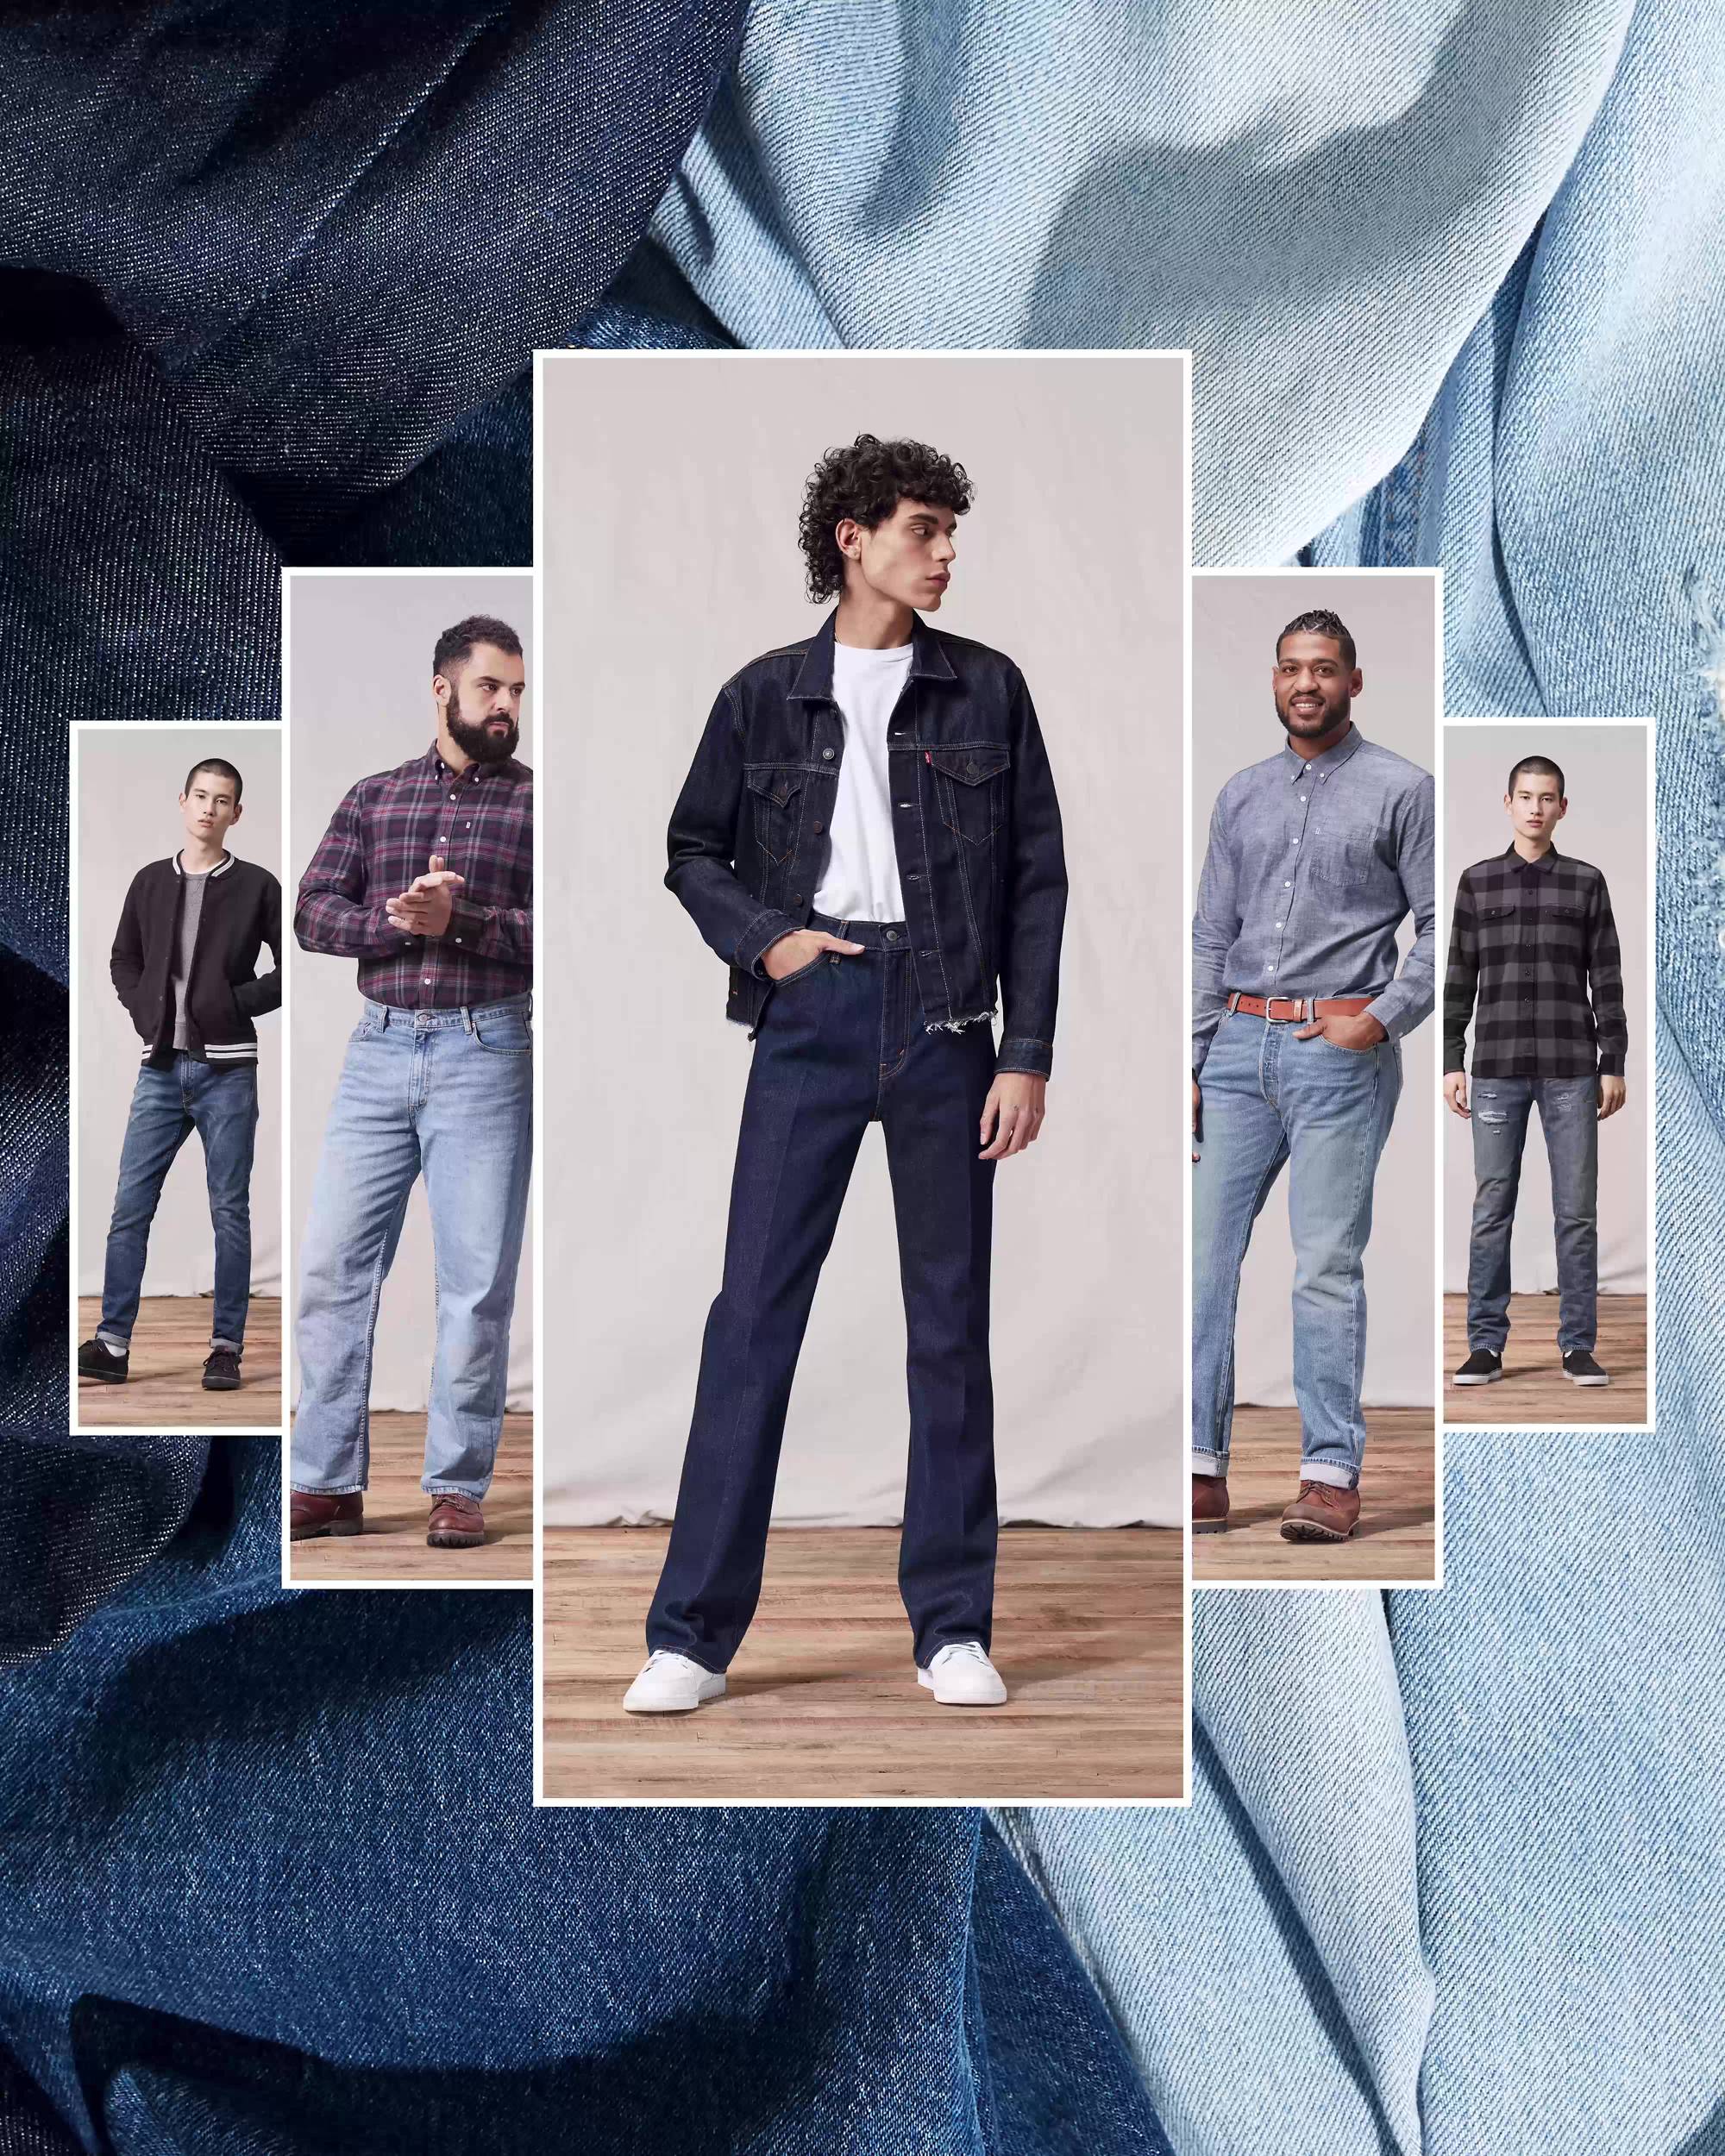 Ask a Designer: How Do I Shop for Vintage Jeans? - Fashionista